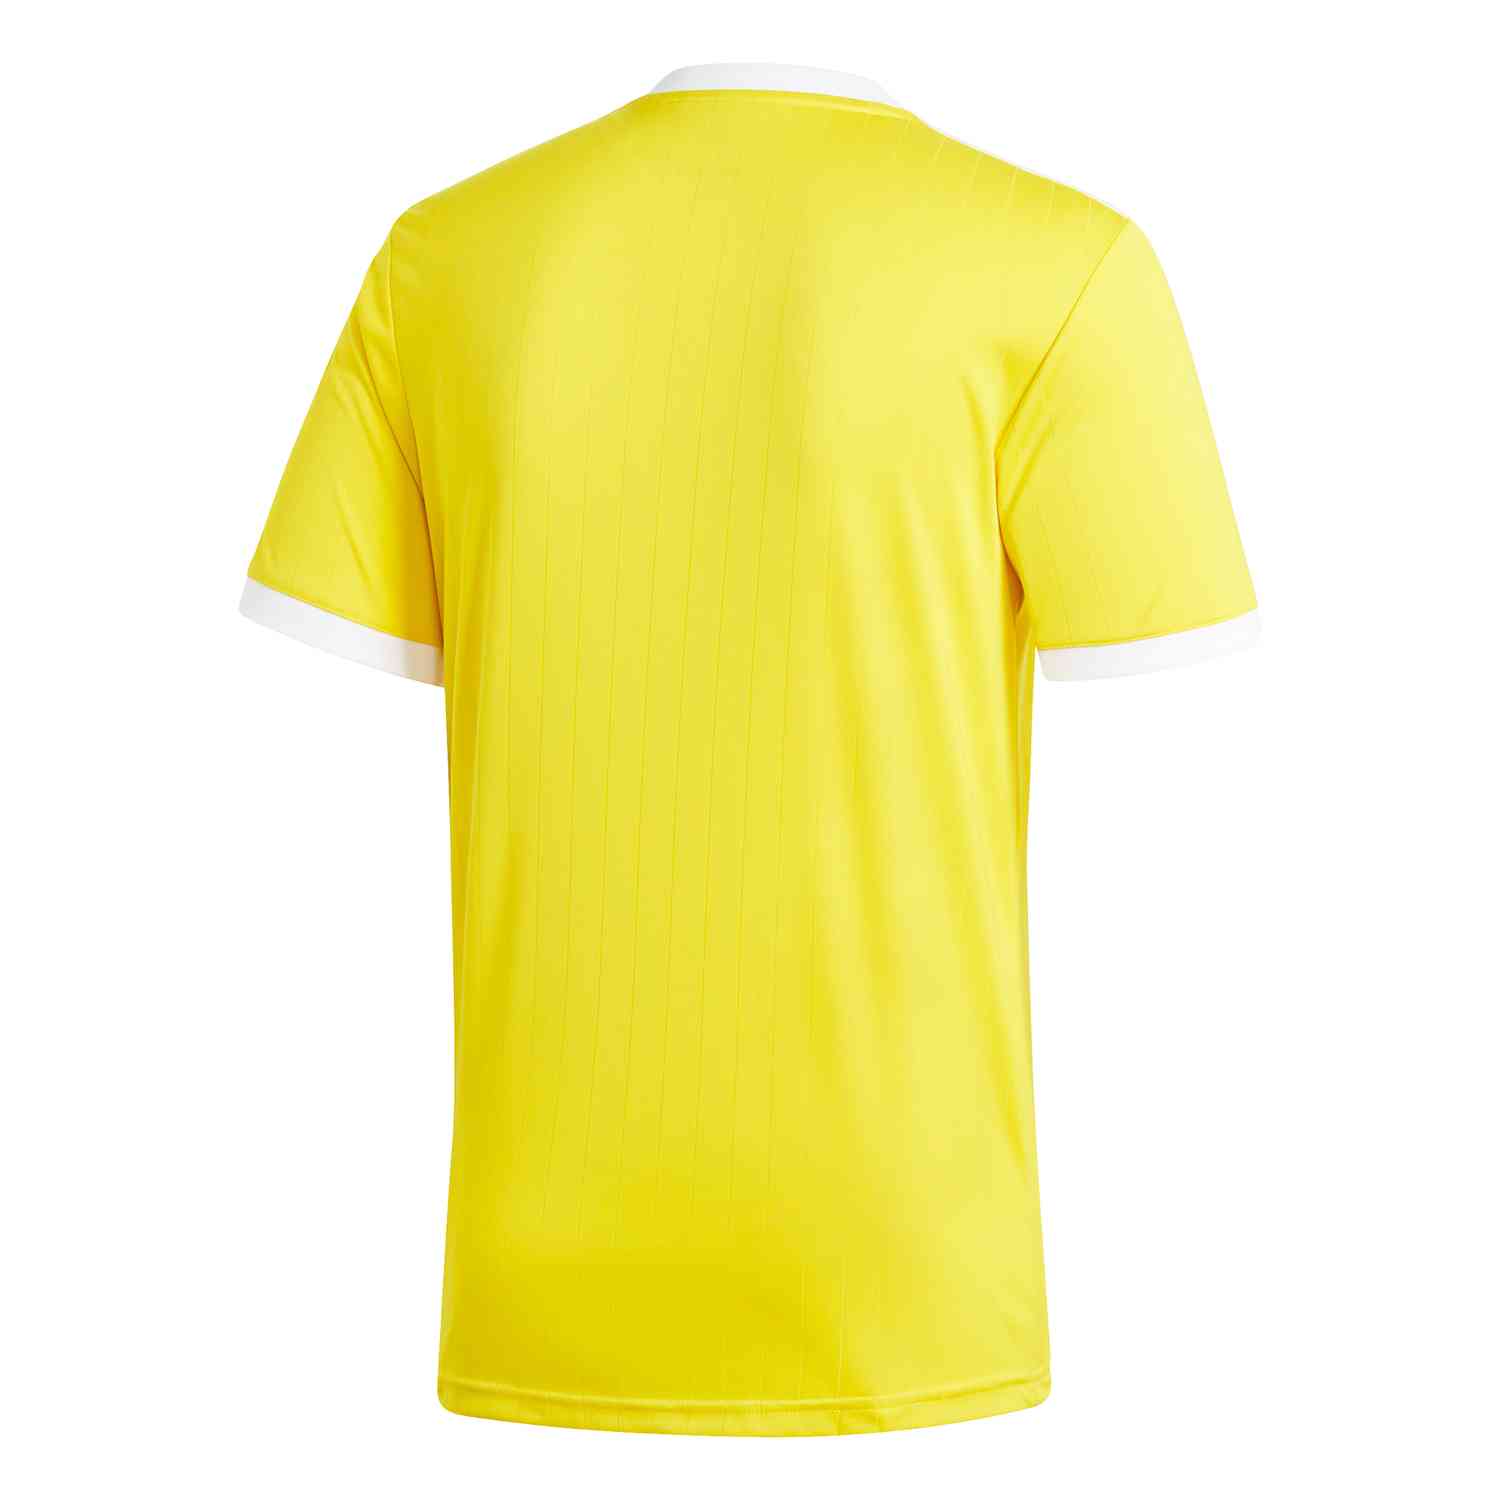 adidas Tabela 18 Jersey - Yellow/White - SoccerPro